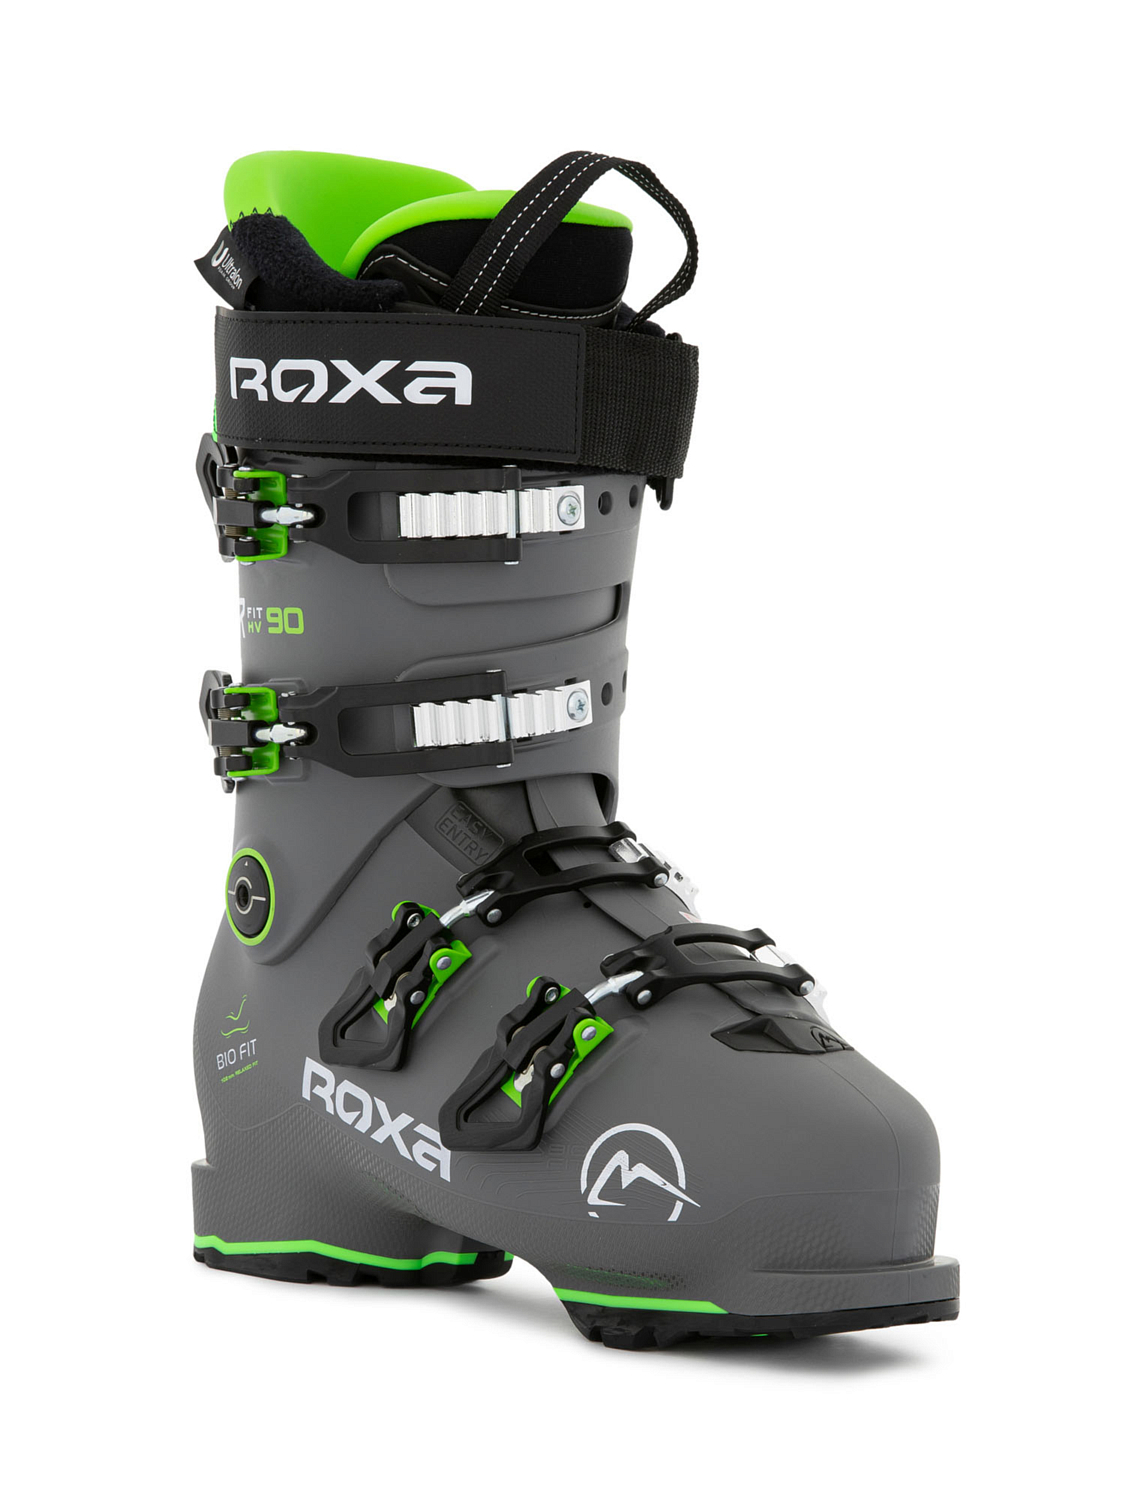 Горнолыжные ботинки ROXA Rfit 90 Gw Dk Grey/Green